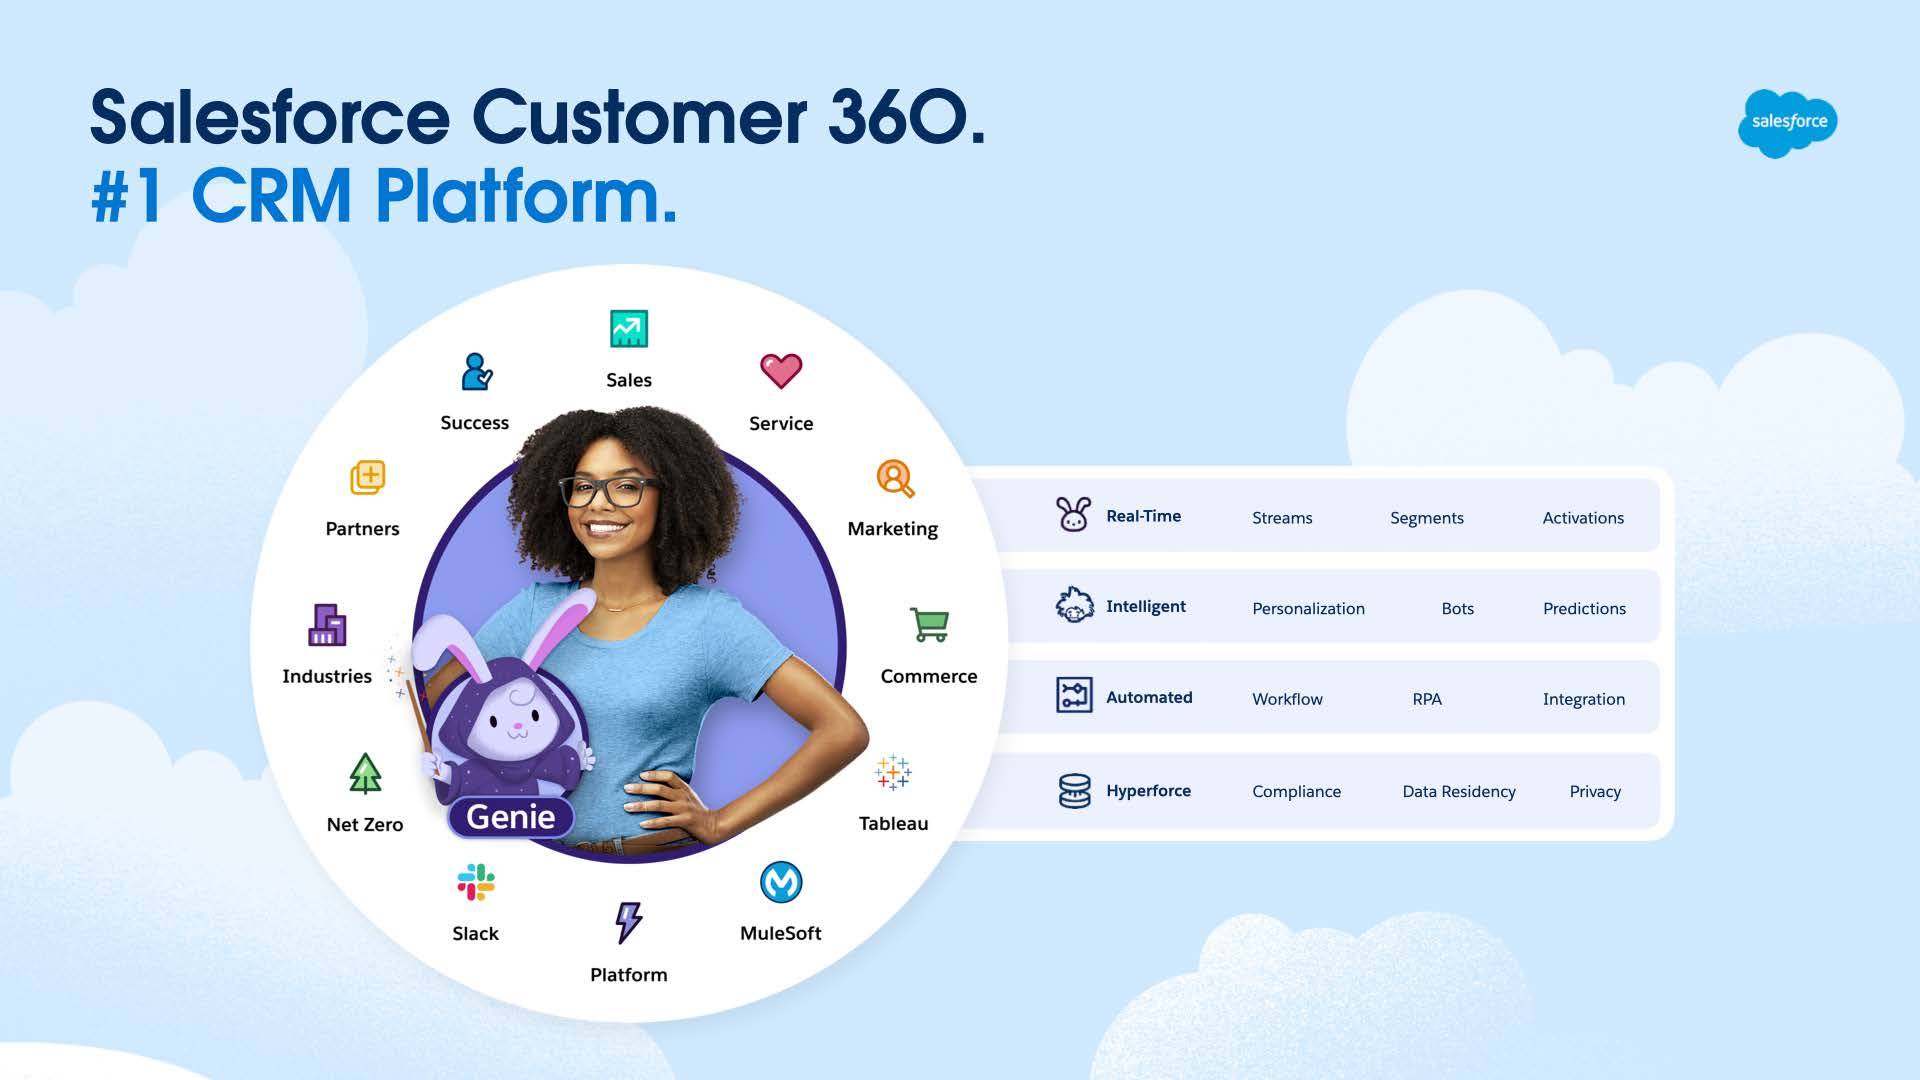  Salesforce Customer 360: Zeit sparen. Geld sparen. Umsatz steigern. In Echtzeit, intelligent, automatisiert, mit Hyperforce. 